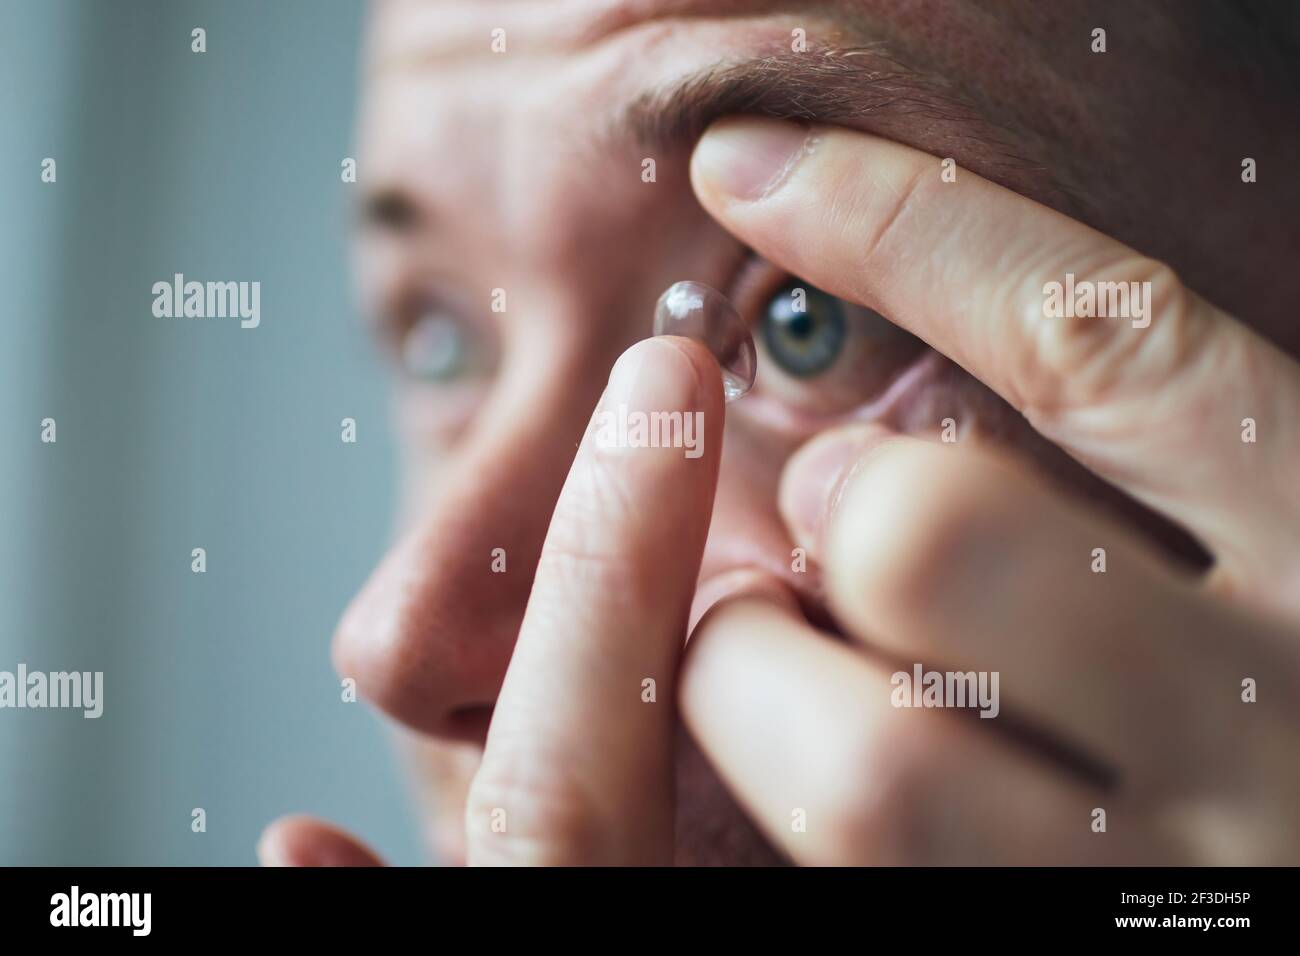 Giovane uomo che mette la lente a contatto sull'occhio. Temi vista e routine quotidiana. Foto Stock